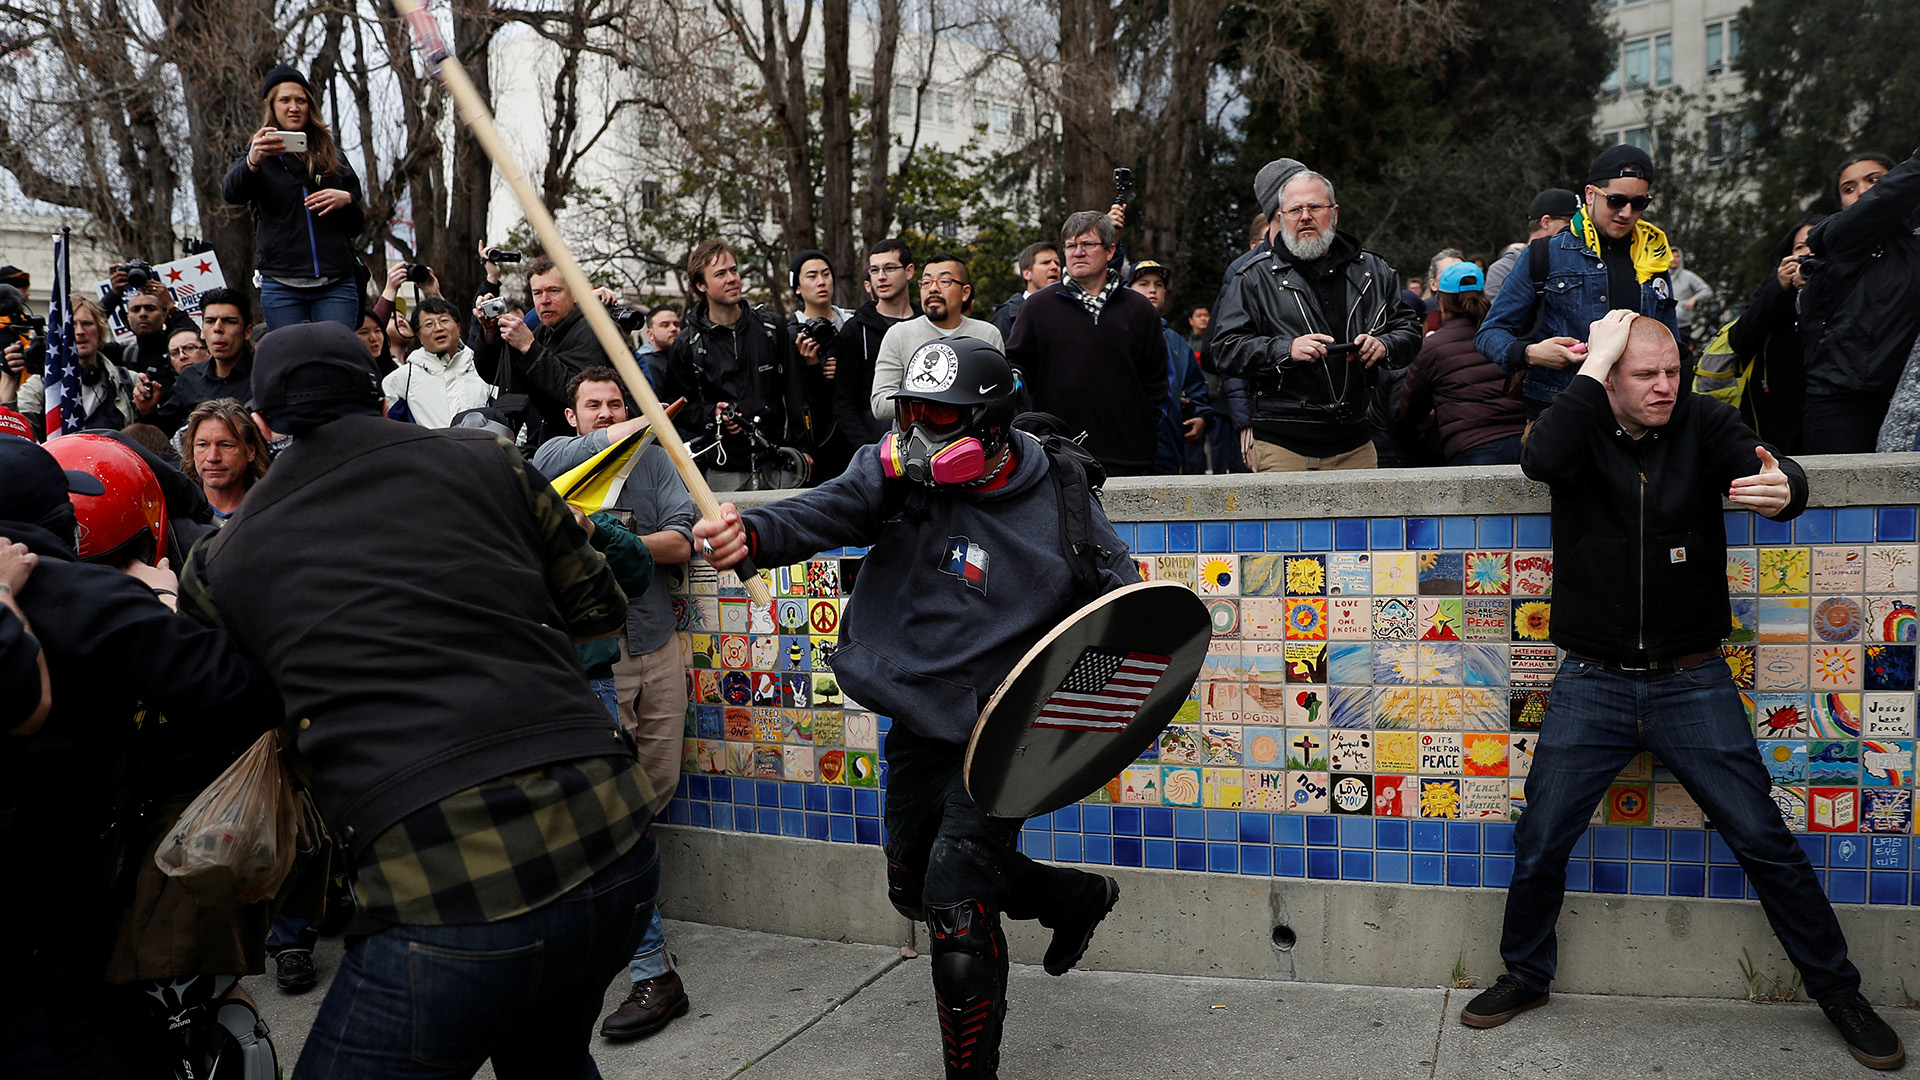 Diez detenidos tras choques entre simpatizantes y detractores de Trump en Berkeley